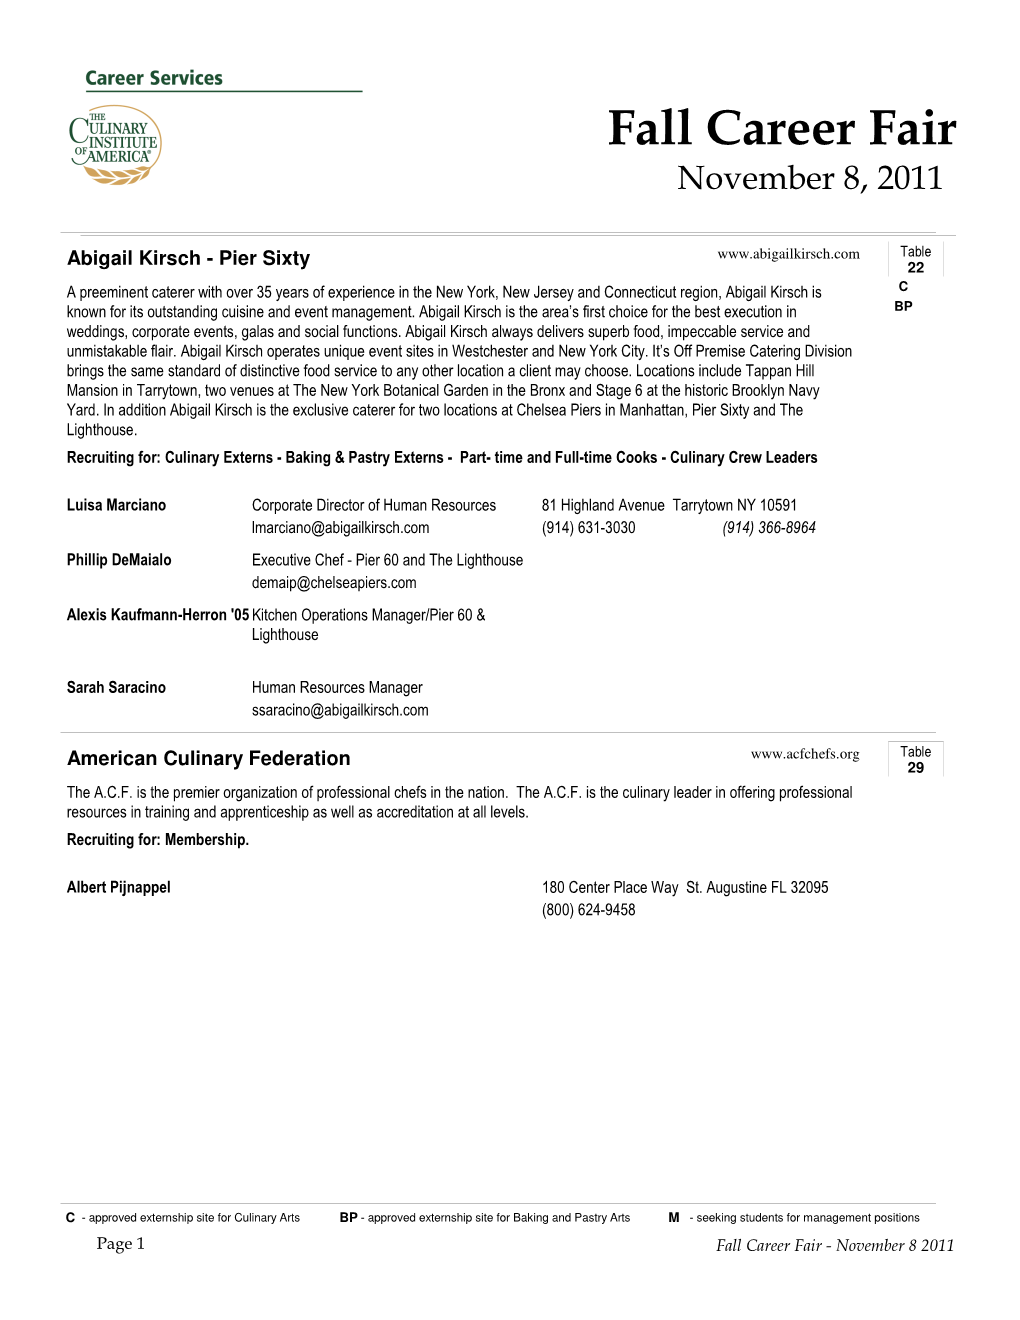 Fall Career Fair November 8, 2011